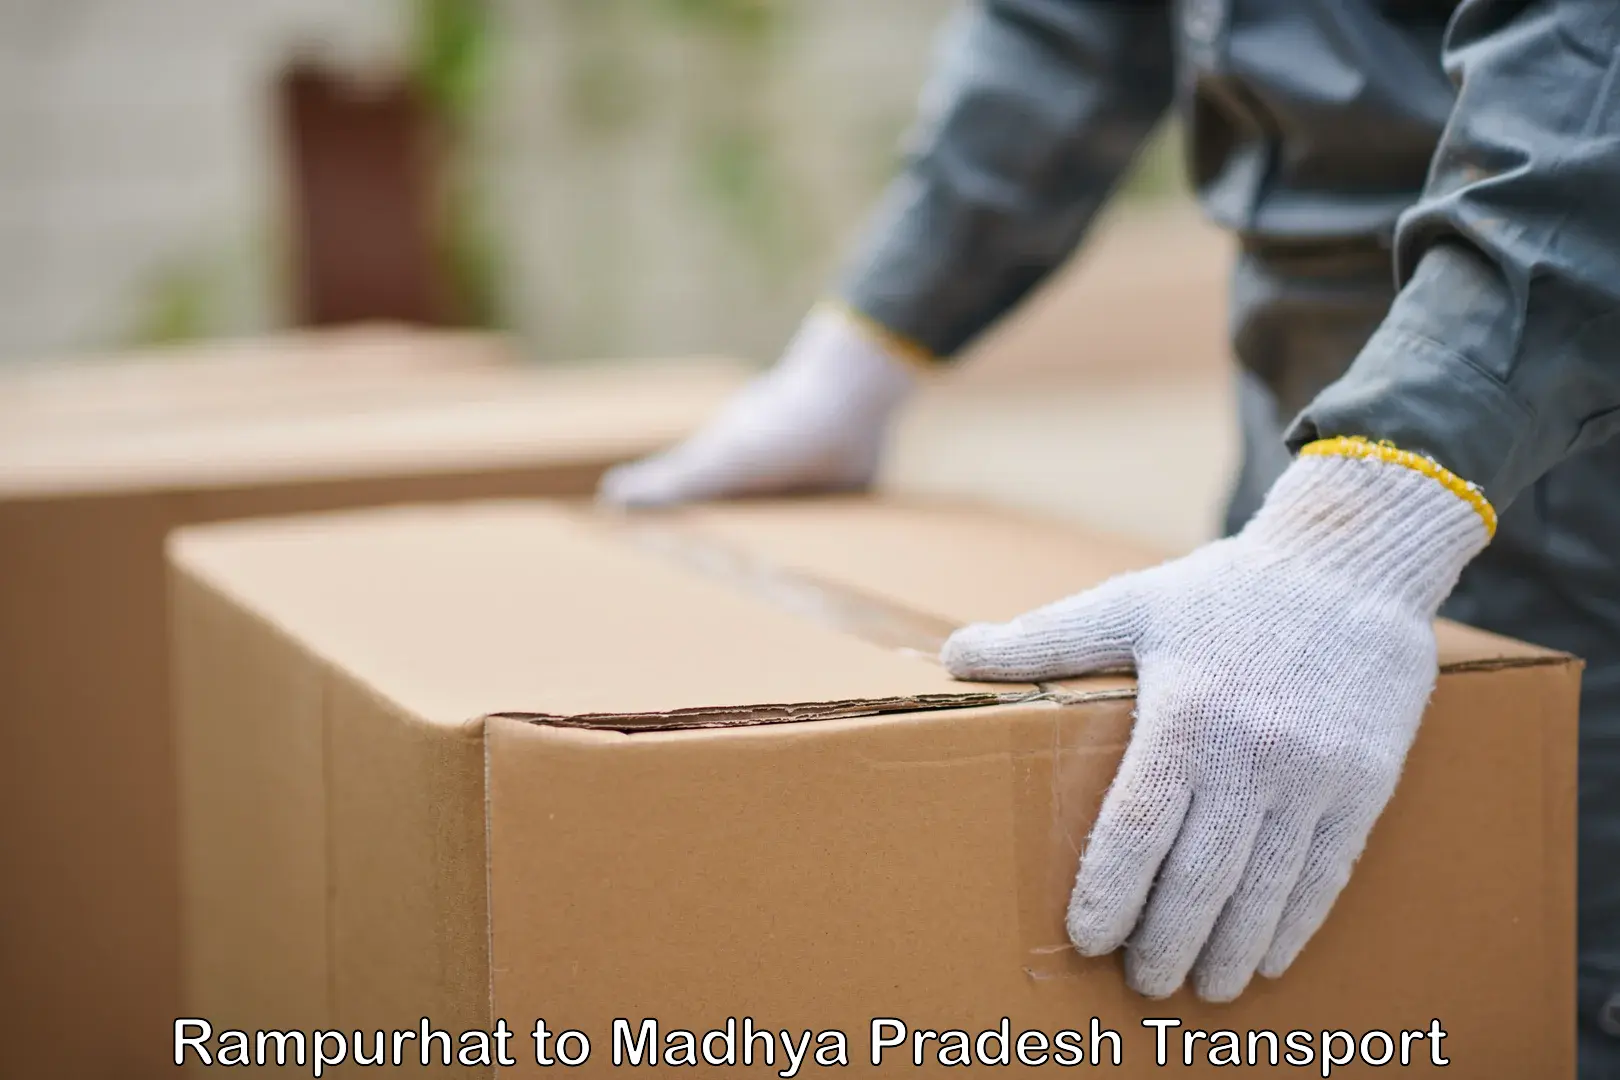 Furniture transport service in Rampurhat to Jirapur